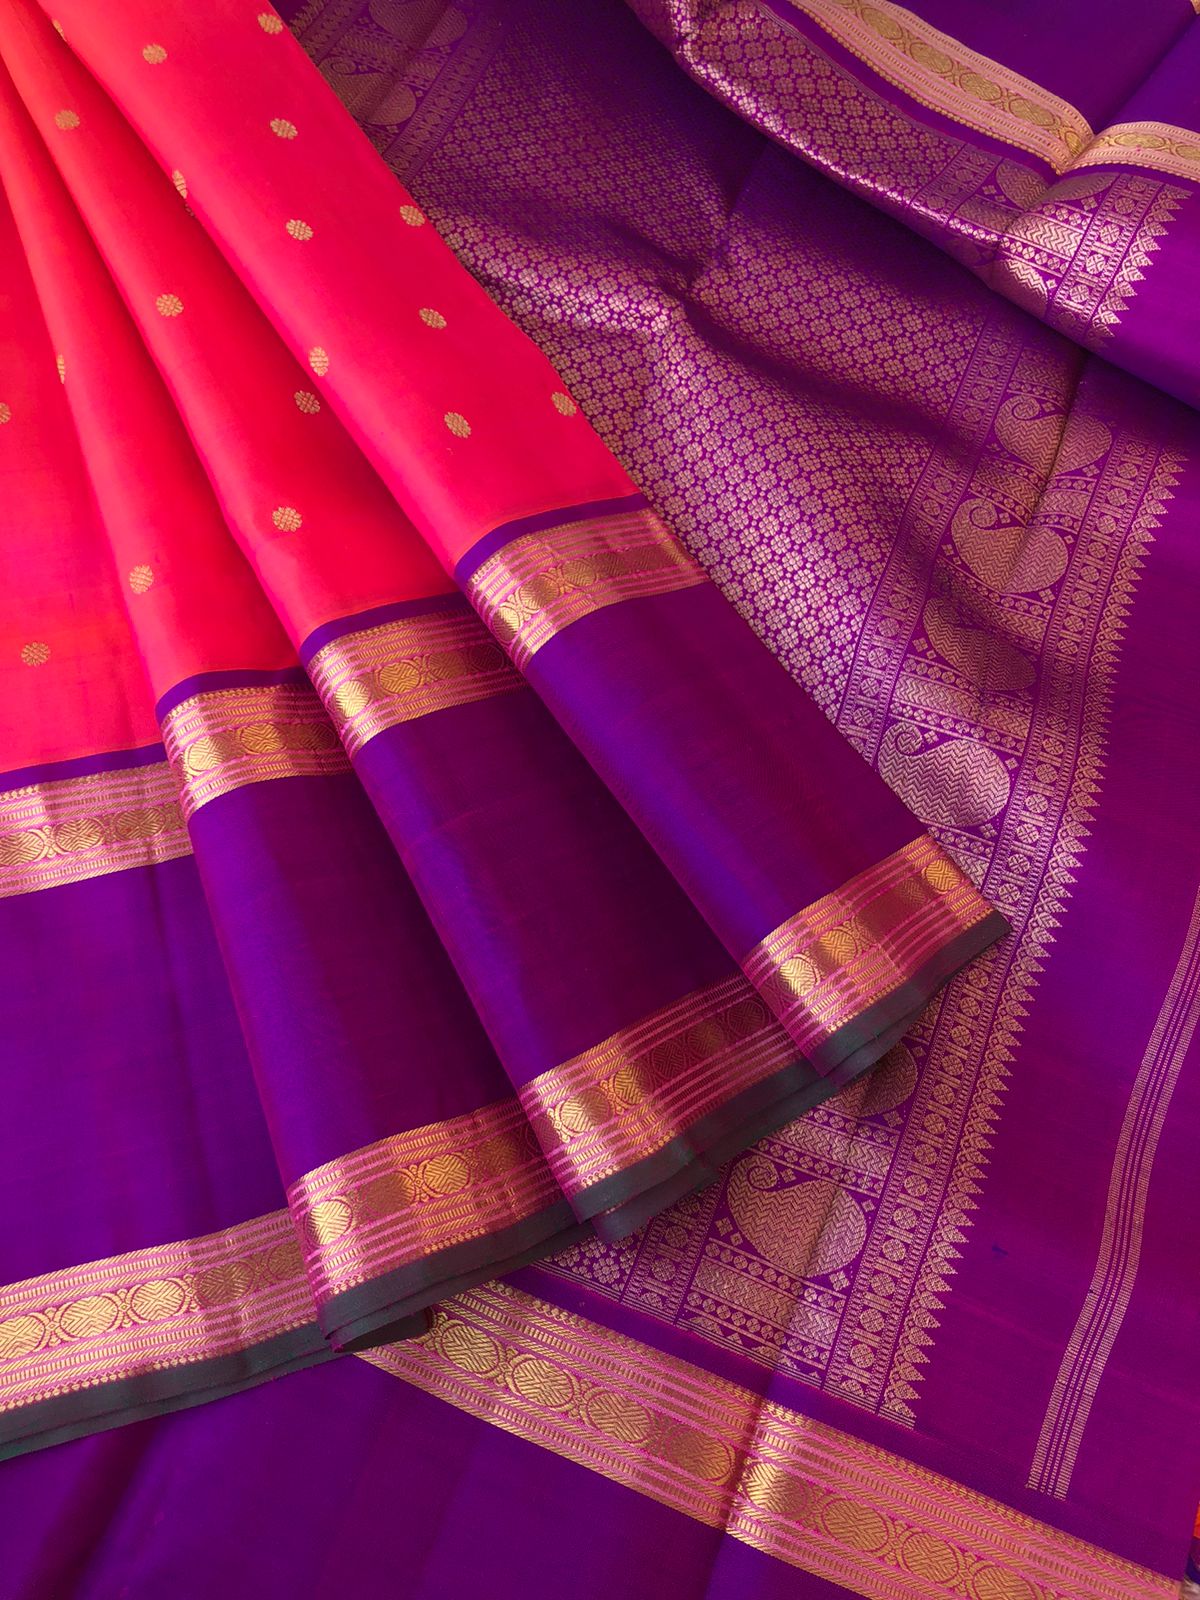 Shree Ka - Much Needed Kanchivarams - stunning orange short pink with violet woven broad retta pett rudurakasham borders